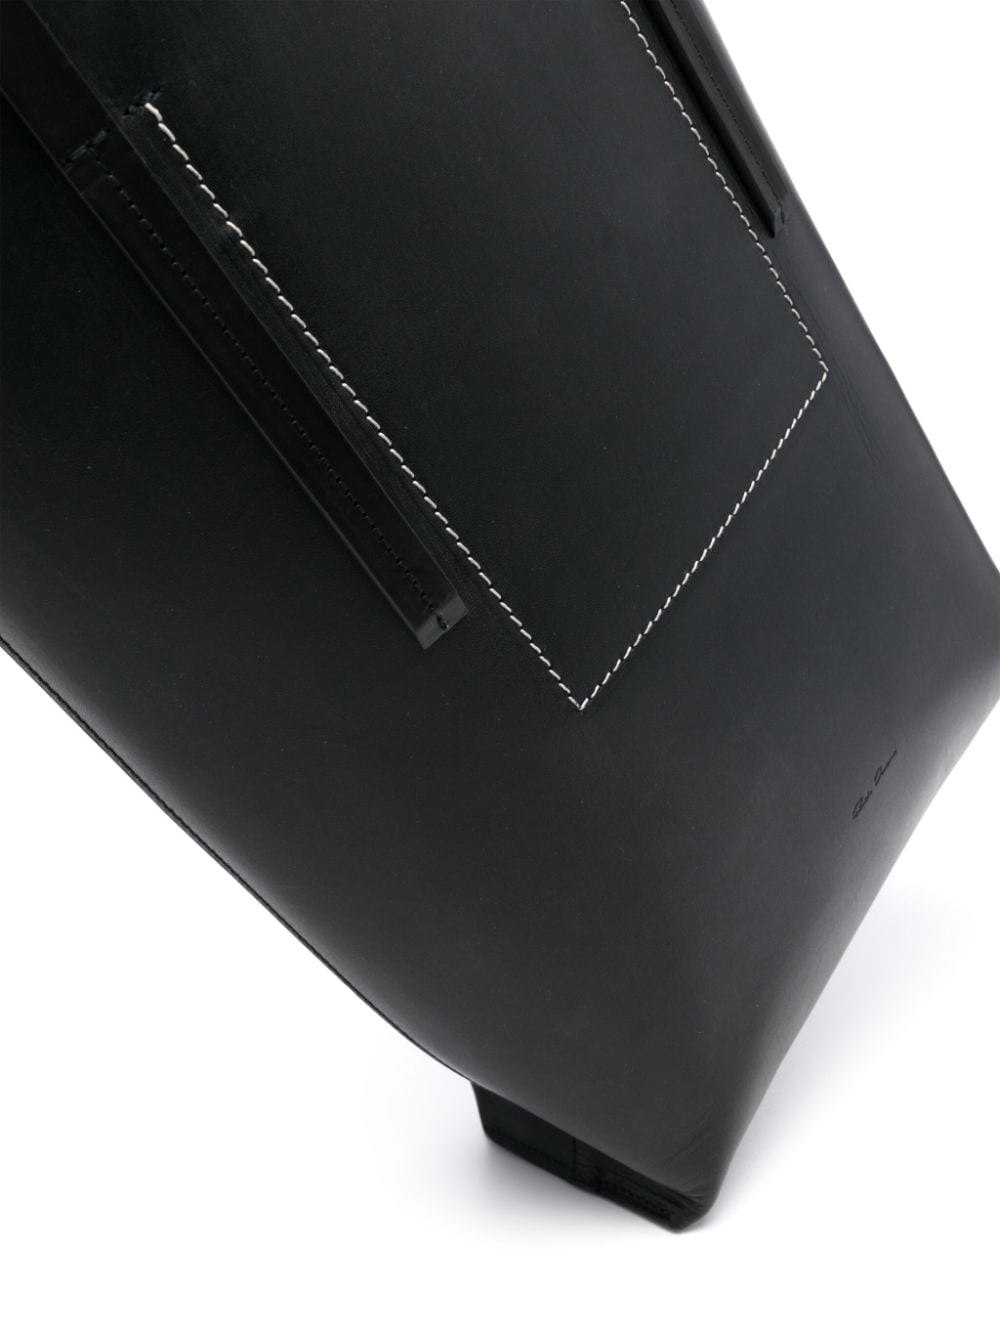 medium leather tote bag - 3